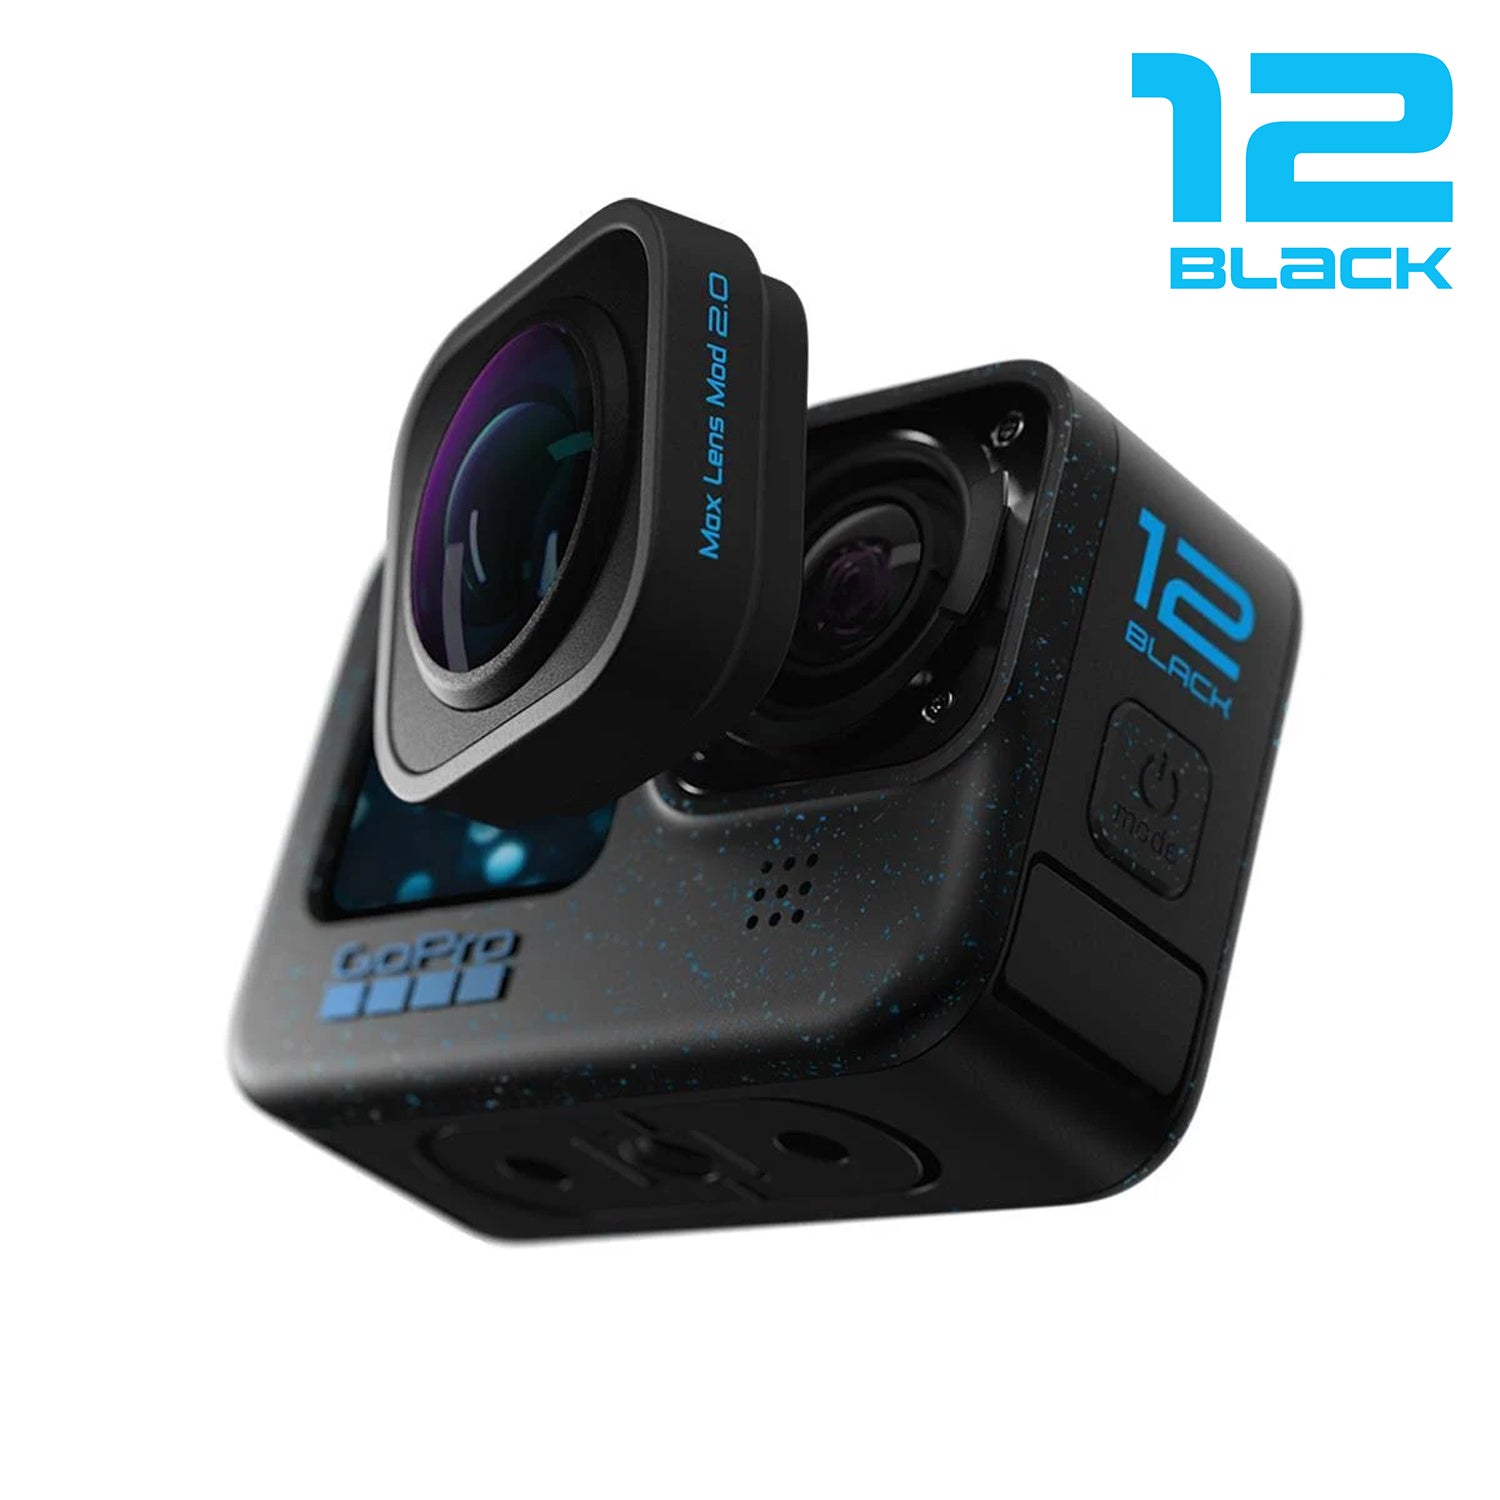 GoPro Max Lens Mod 2.0 for Hero 12 Black